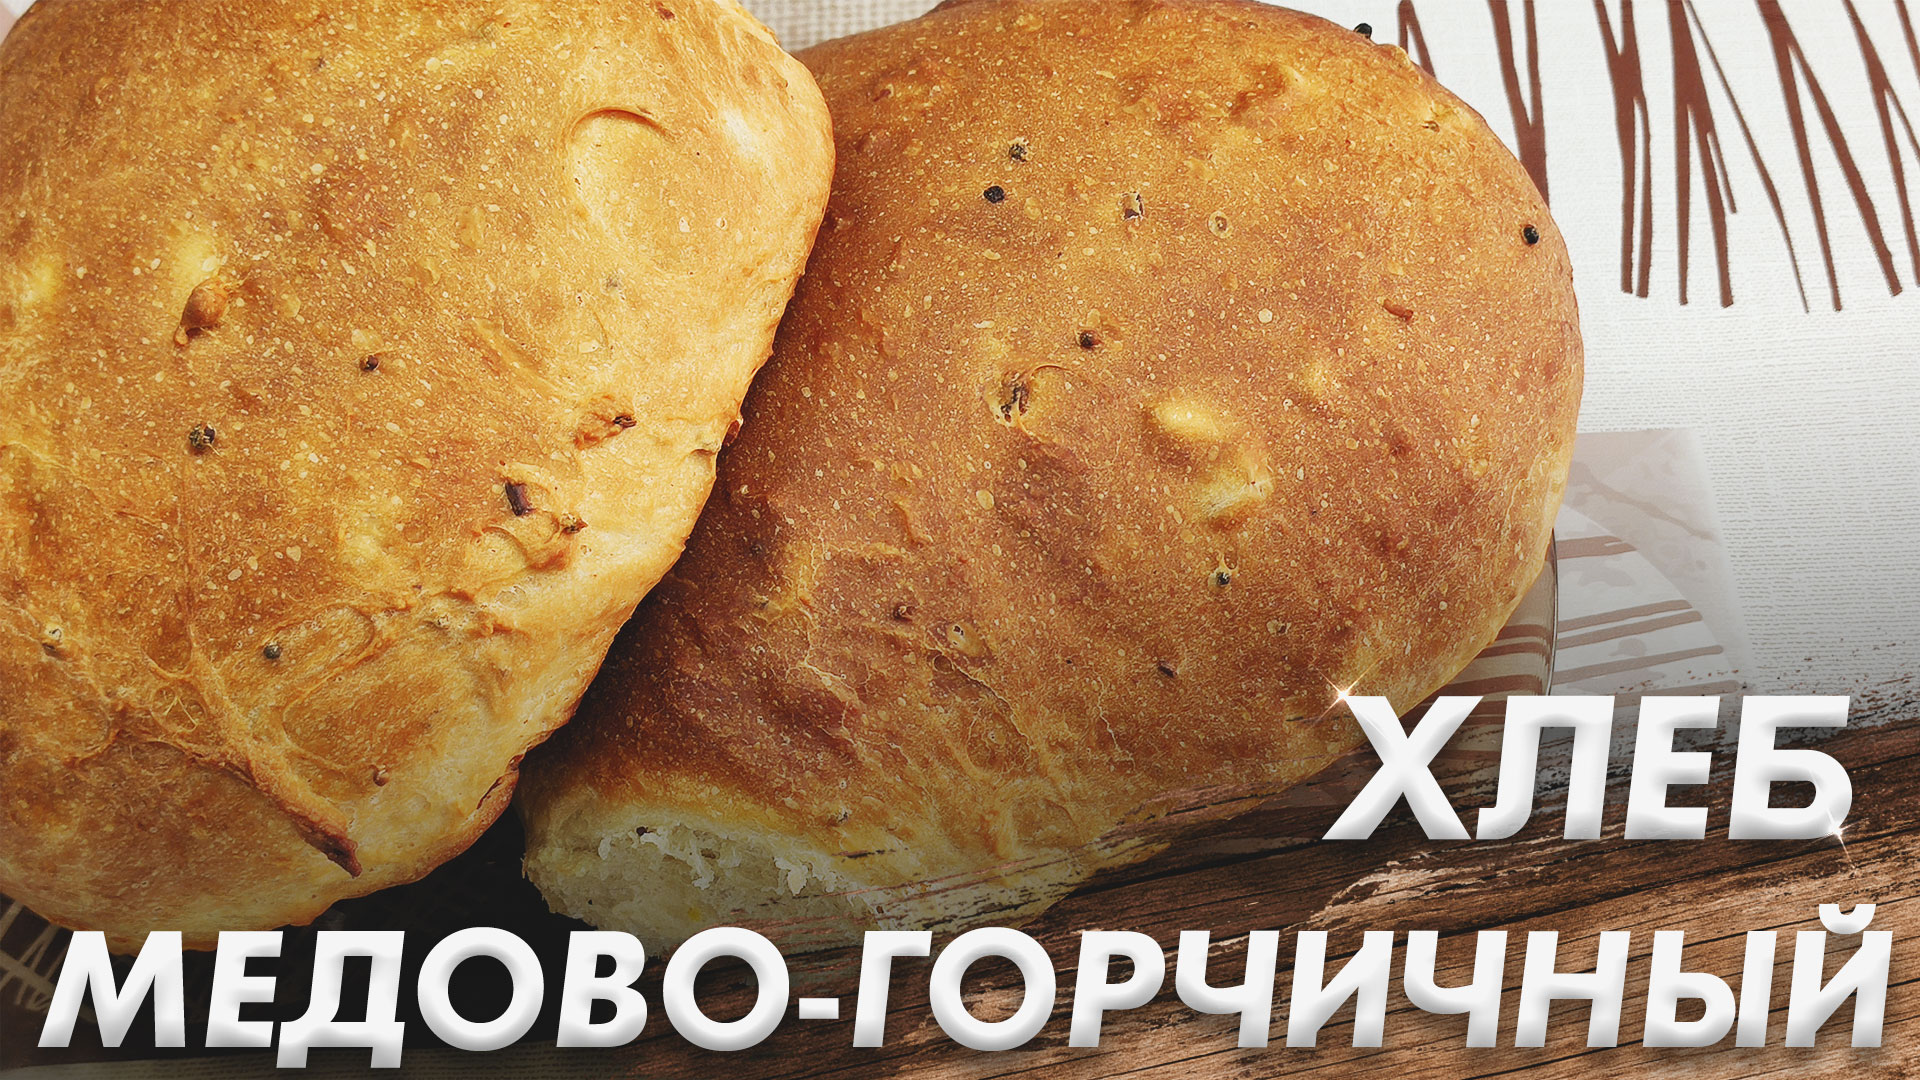 Очень Вкусный и Ароматный Горчичный Хлеб\ Медово-Горчичный Хлеб